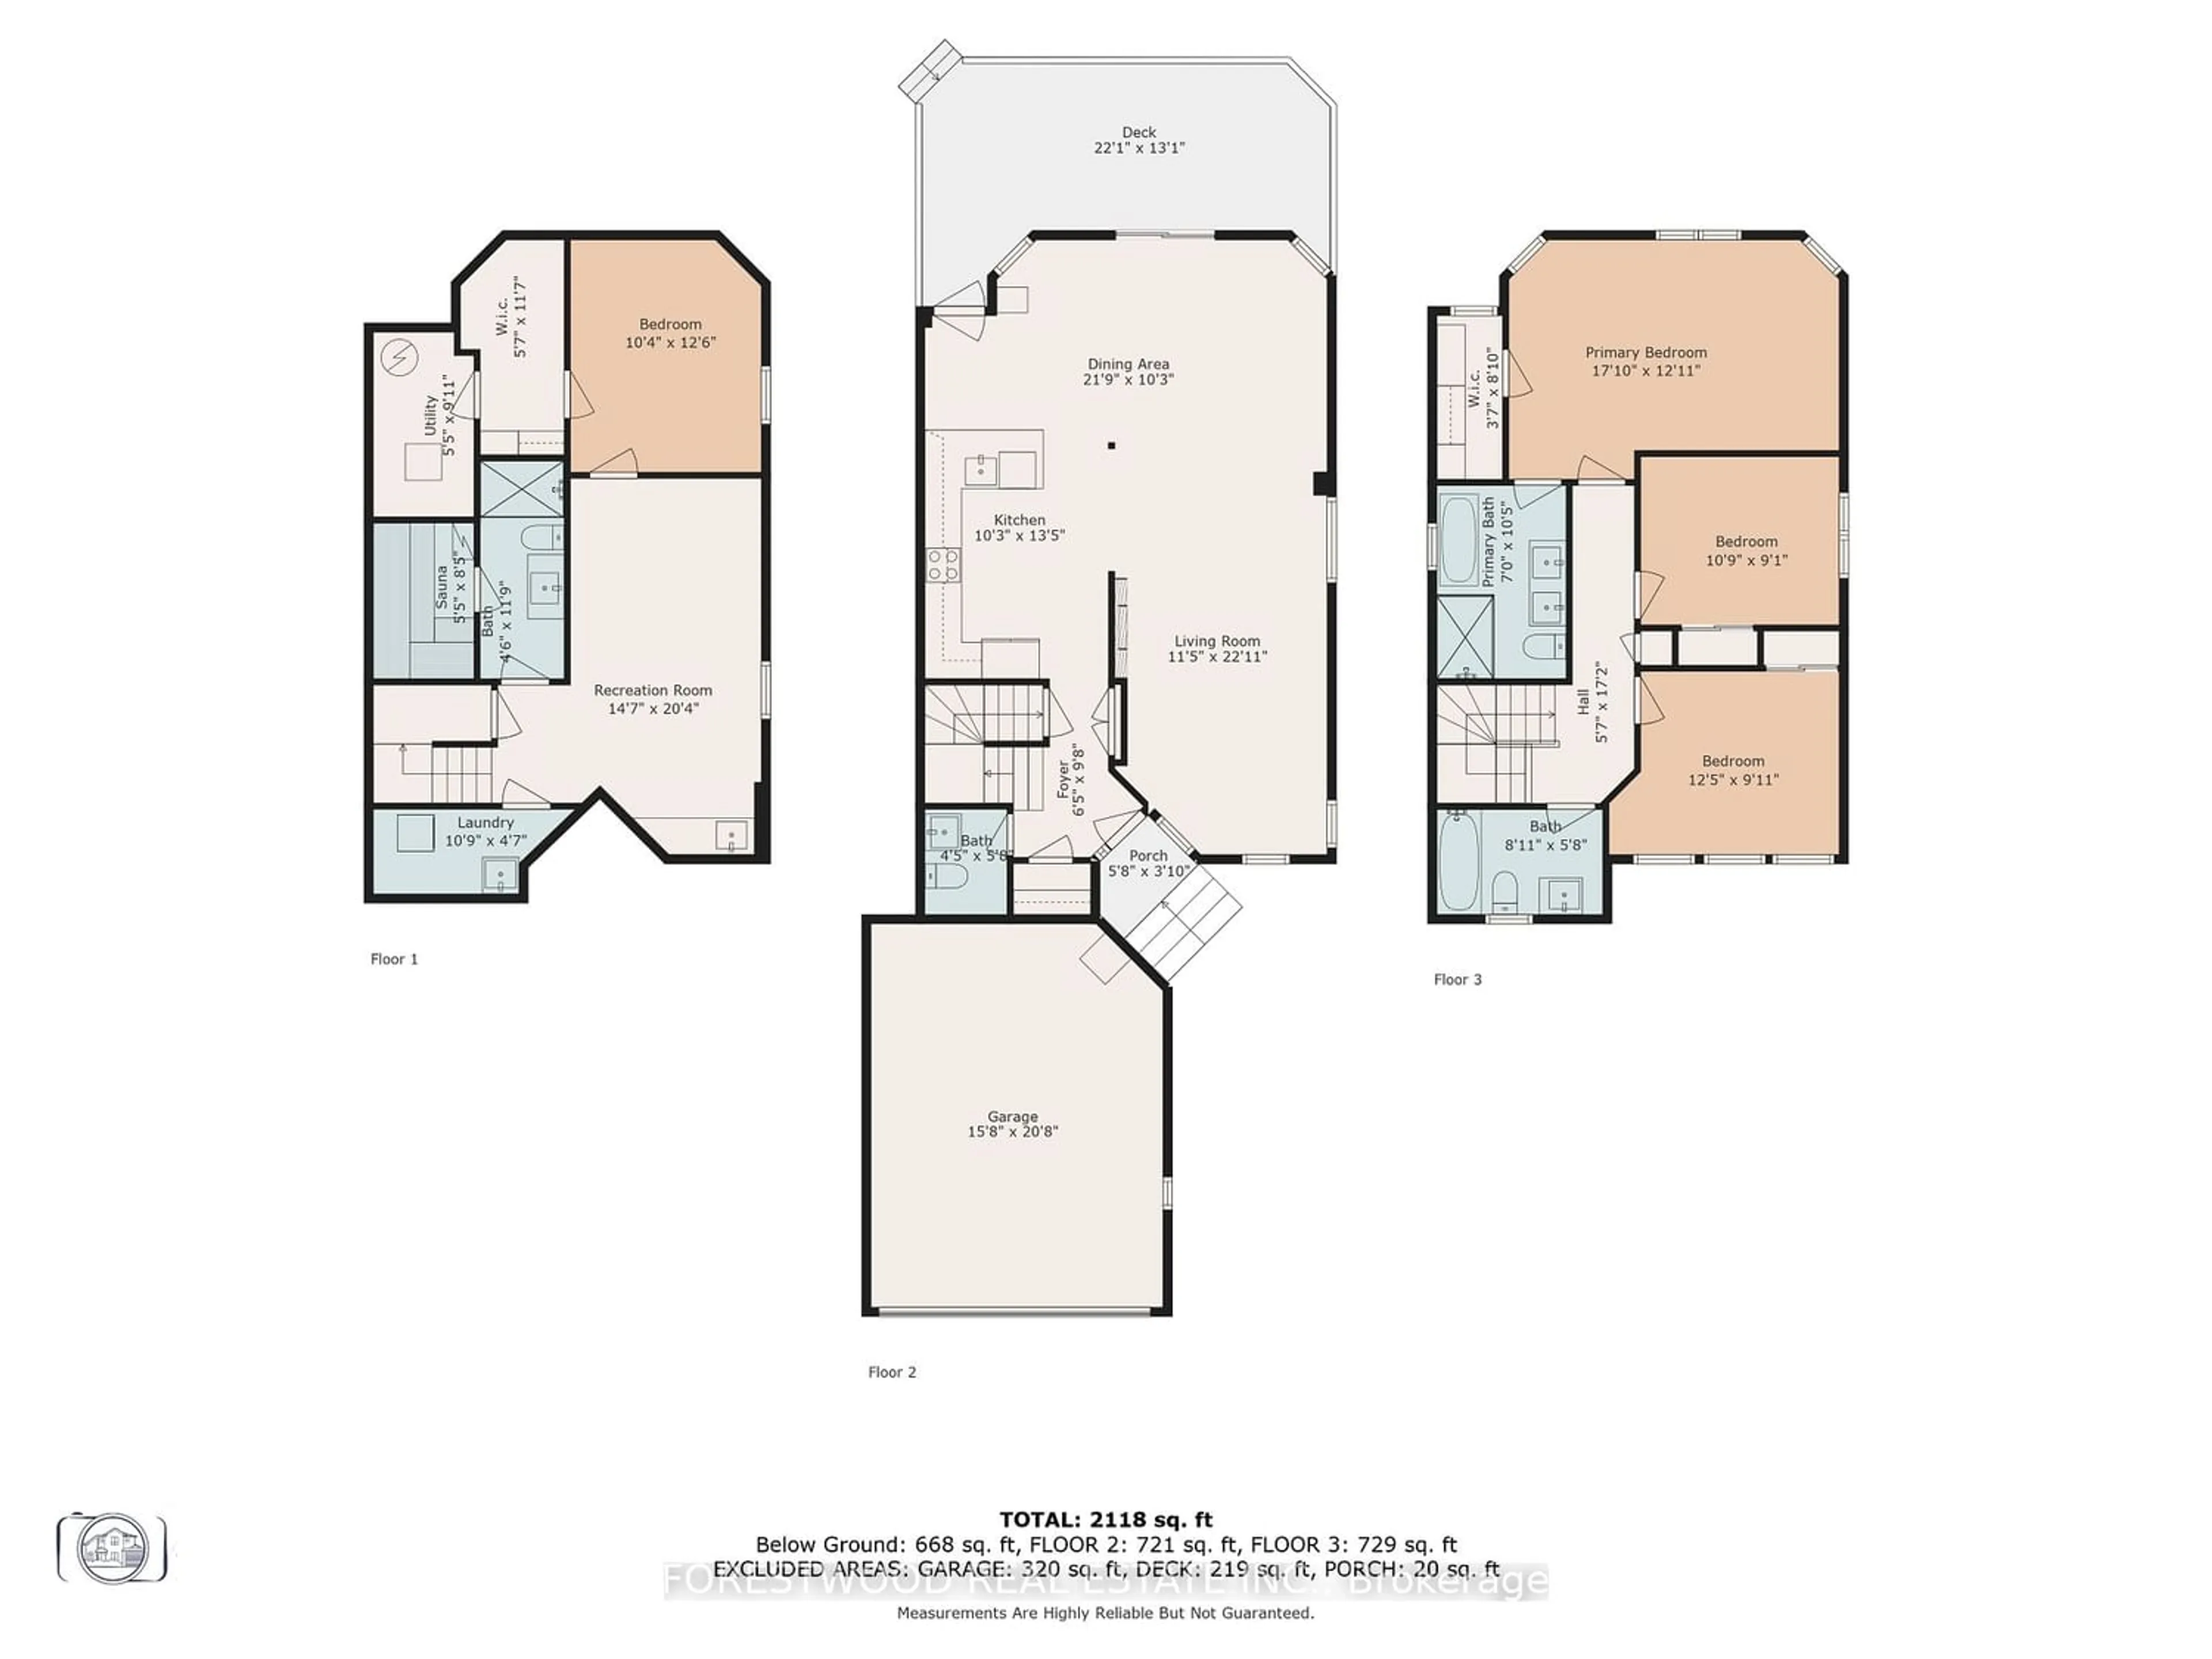 Floor plan for 3533 Nutcracker Dr, Mississauga Ontario L5N 6G2